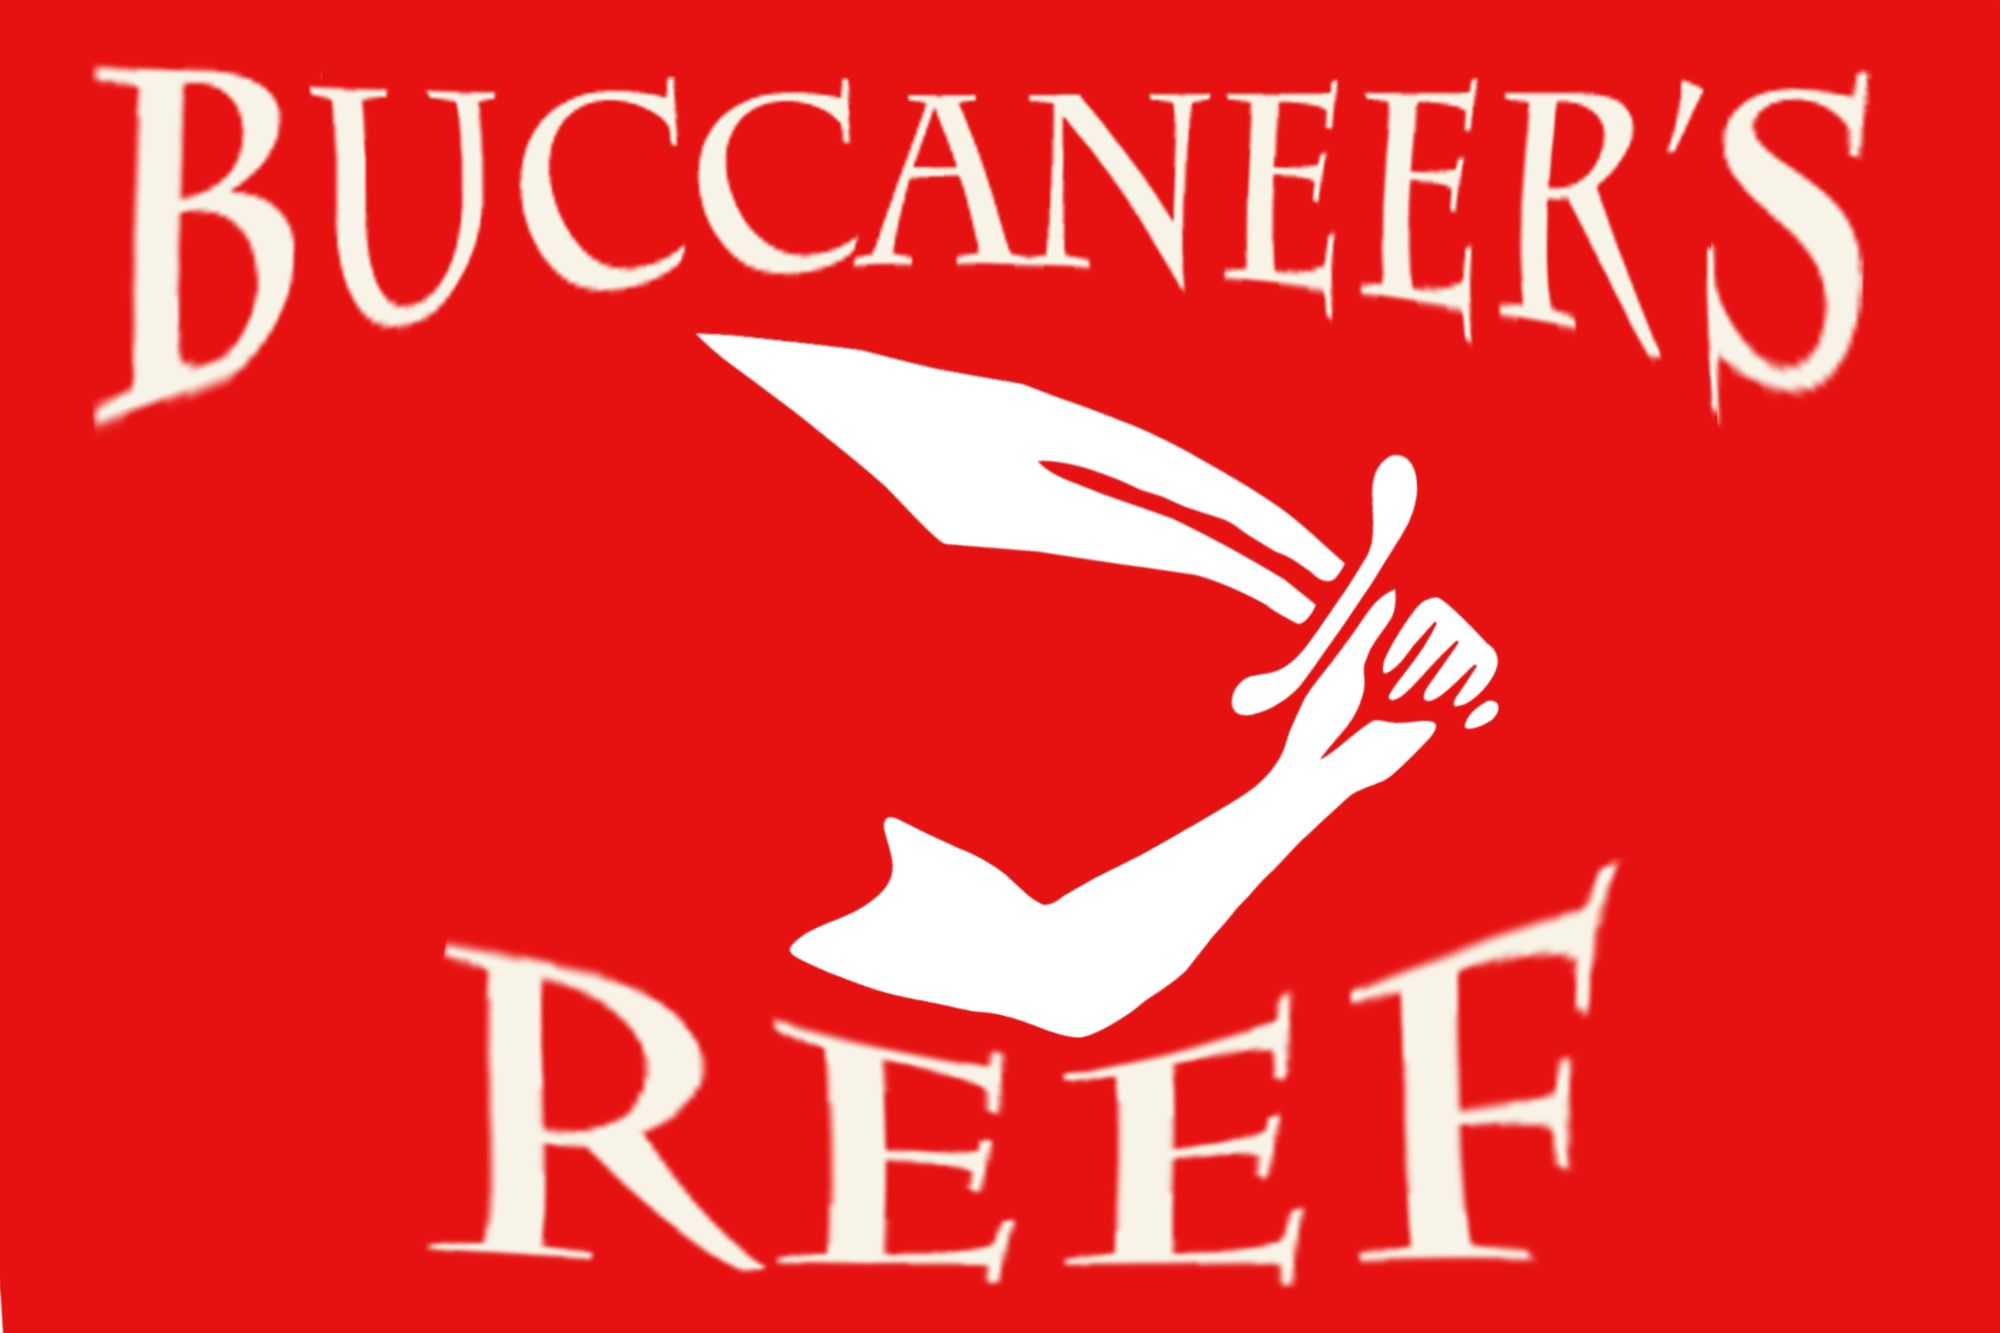 Buccaneers reef logo copy